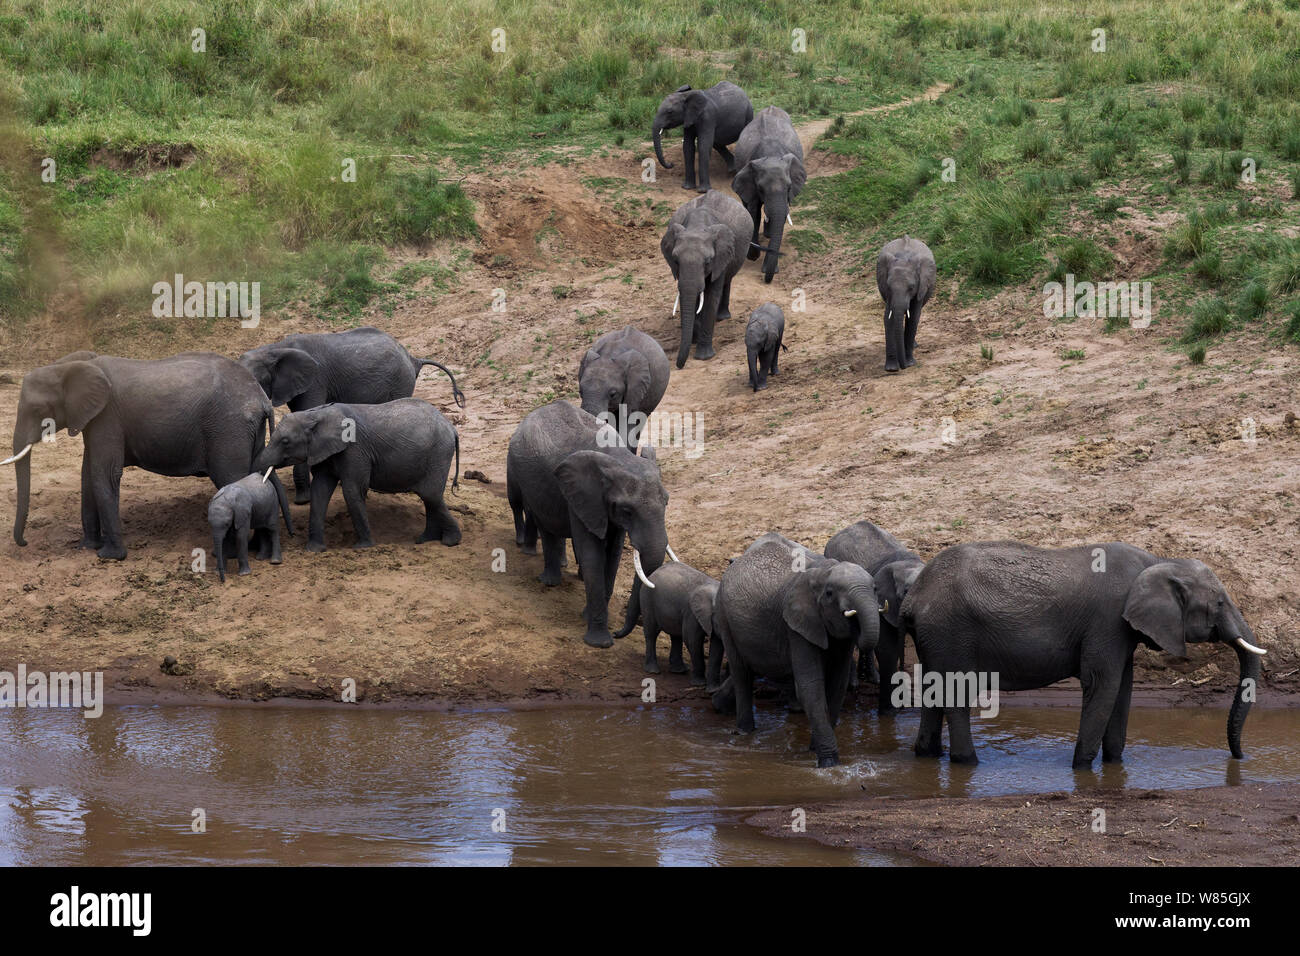 L'éléphant africain (Loxodonta africana) rassemblement des troupeaux à la rivière Mara. Masai Mara National Reserve, Kenya. Banque D'Images